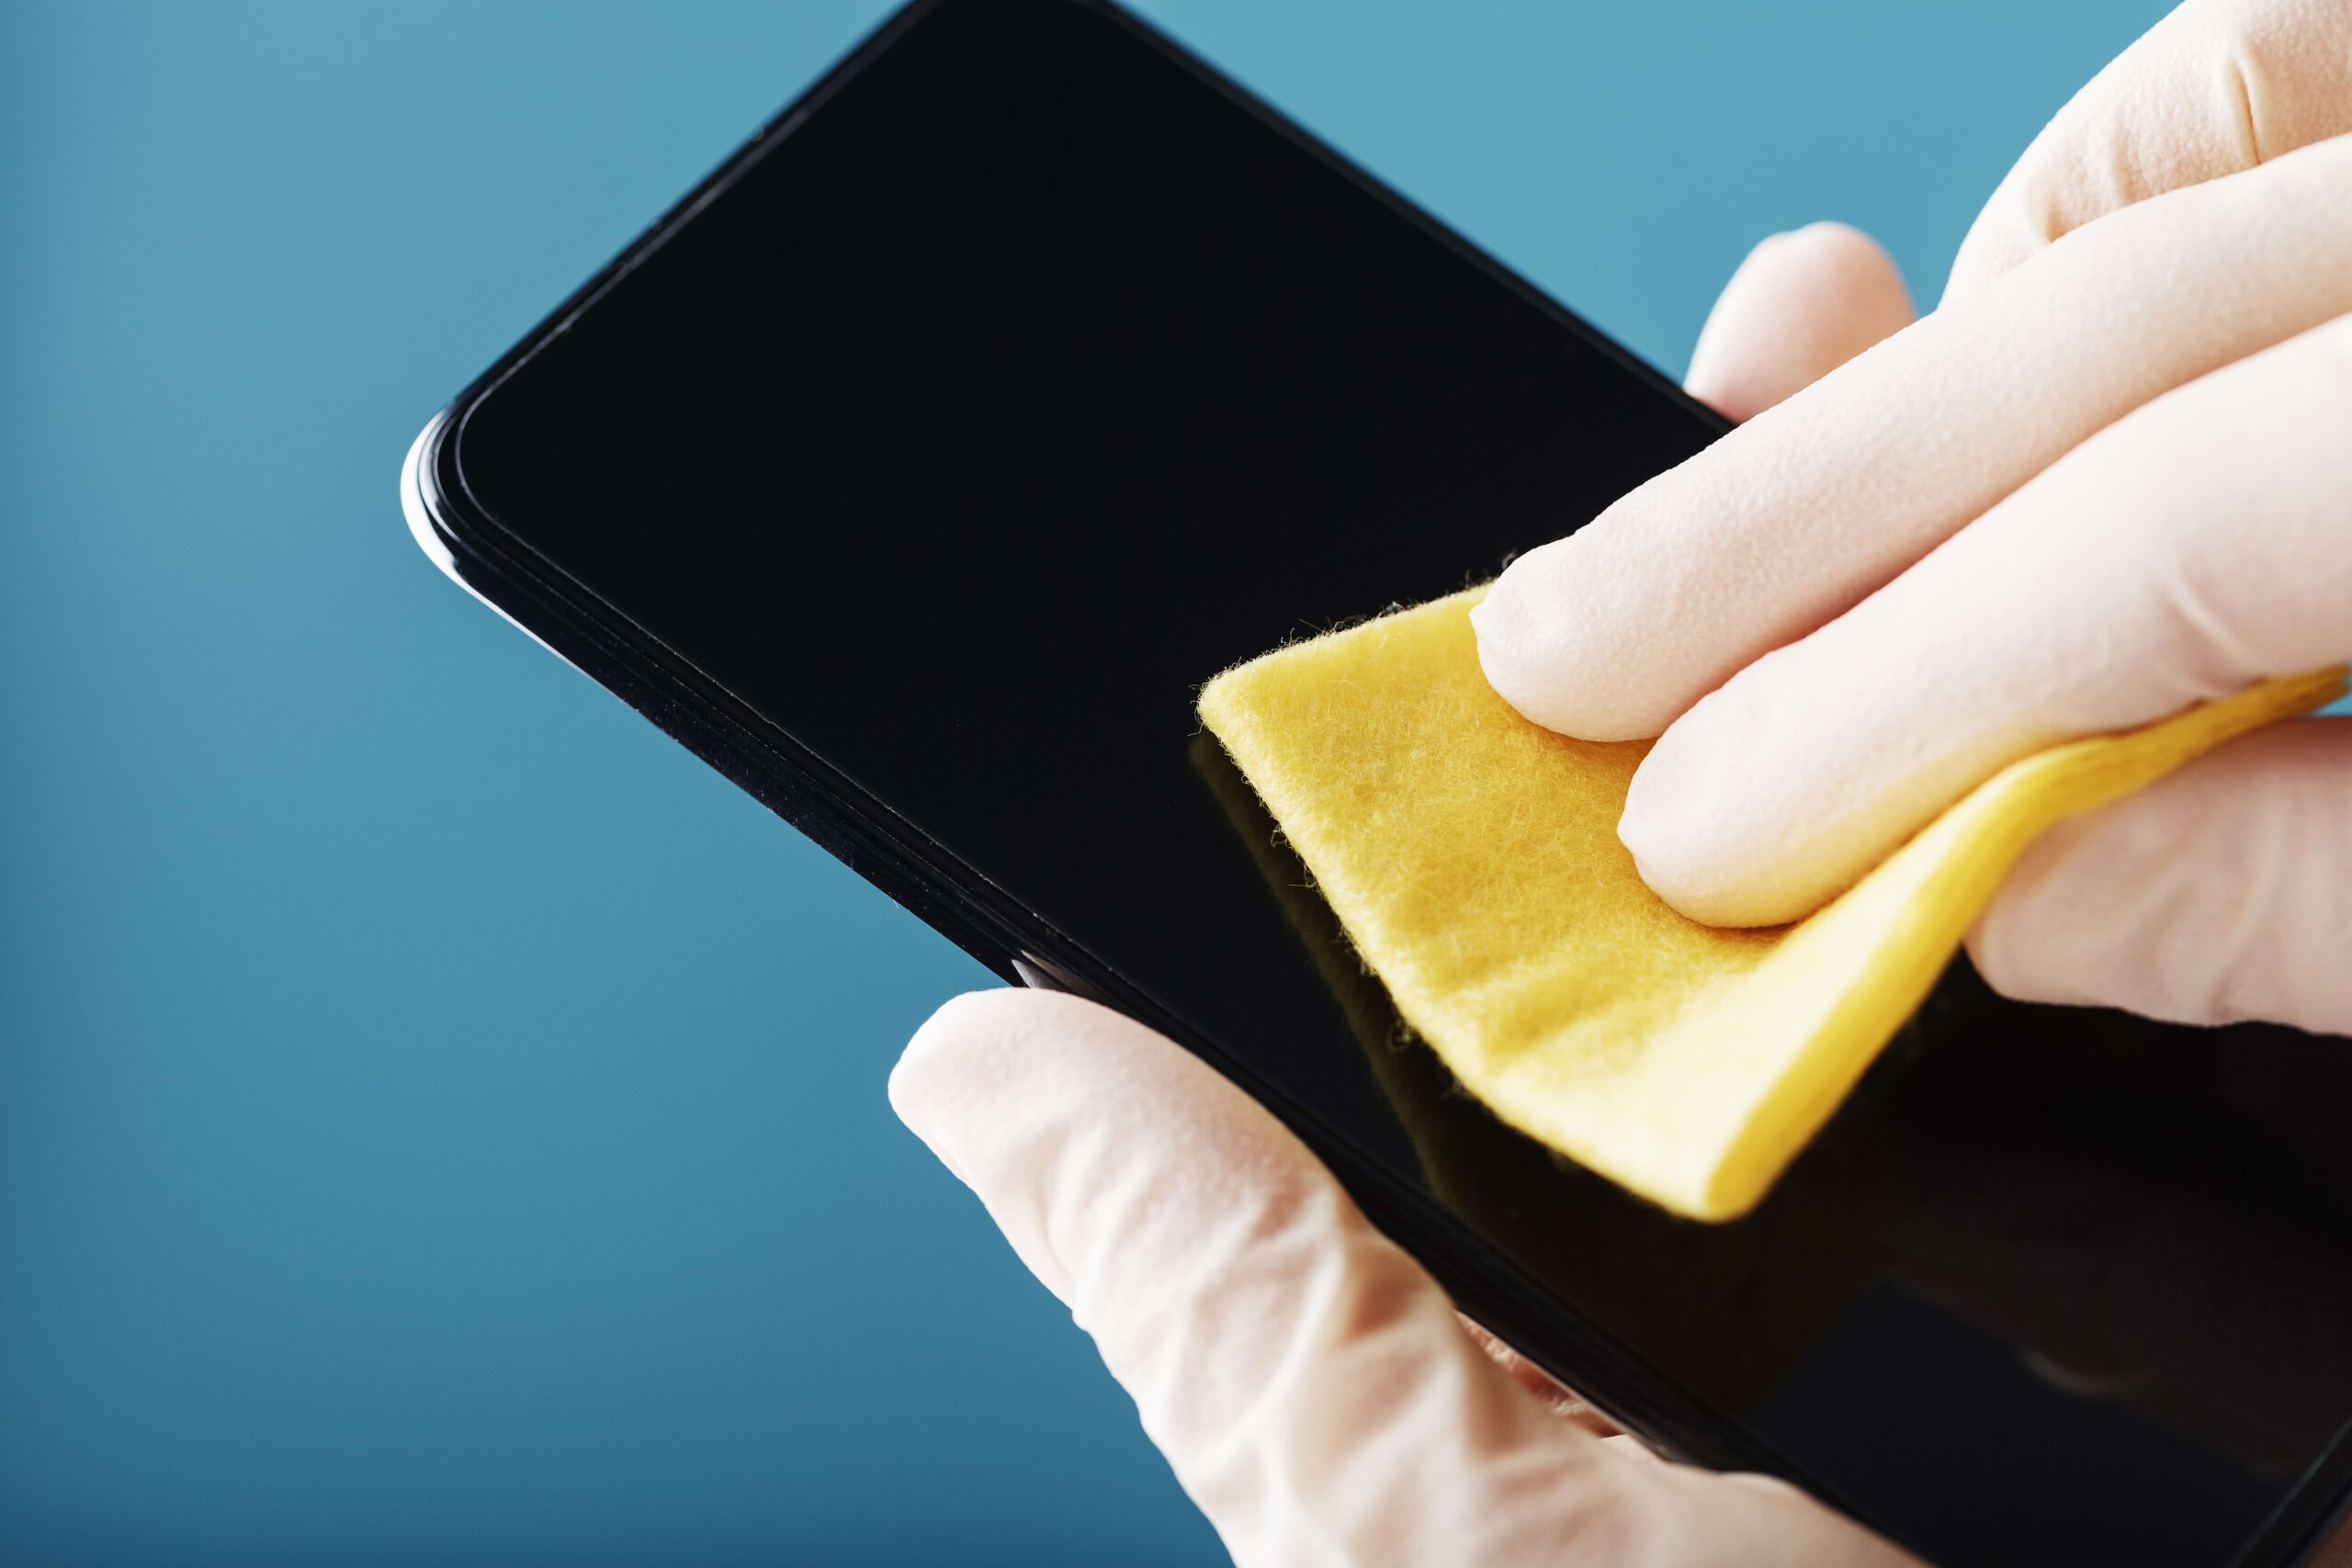 Pessoa com luva branca limpando a tela do celular com flanela amarela